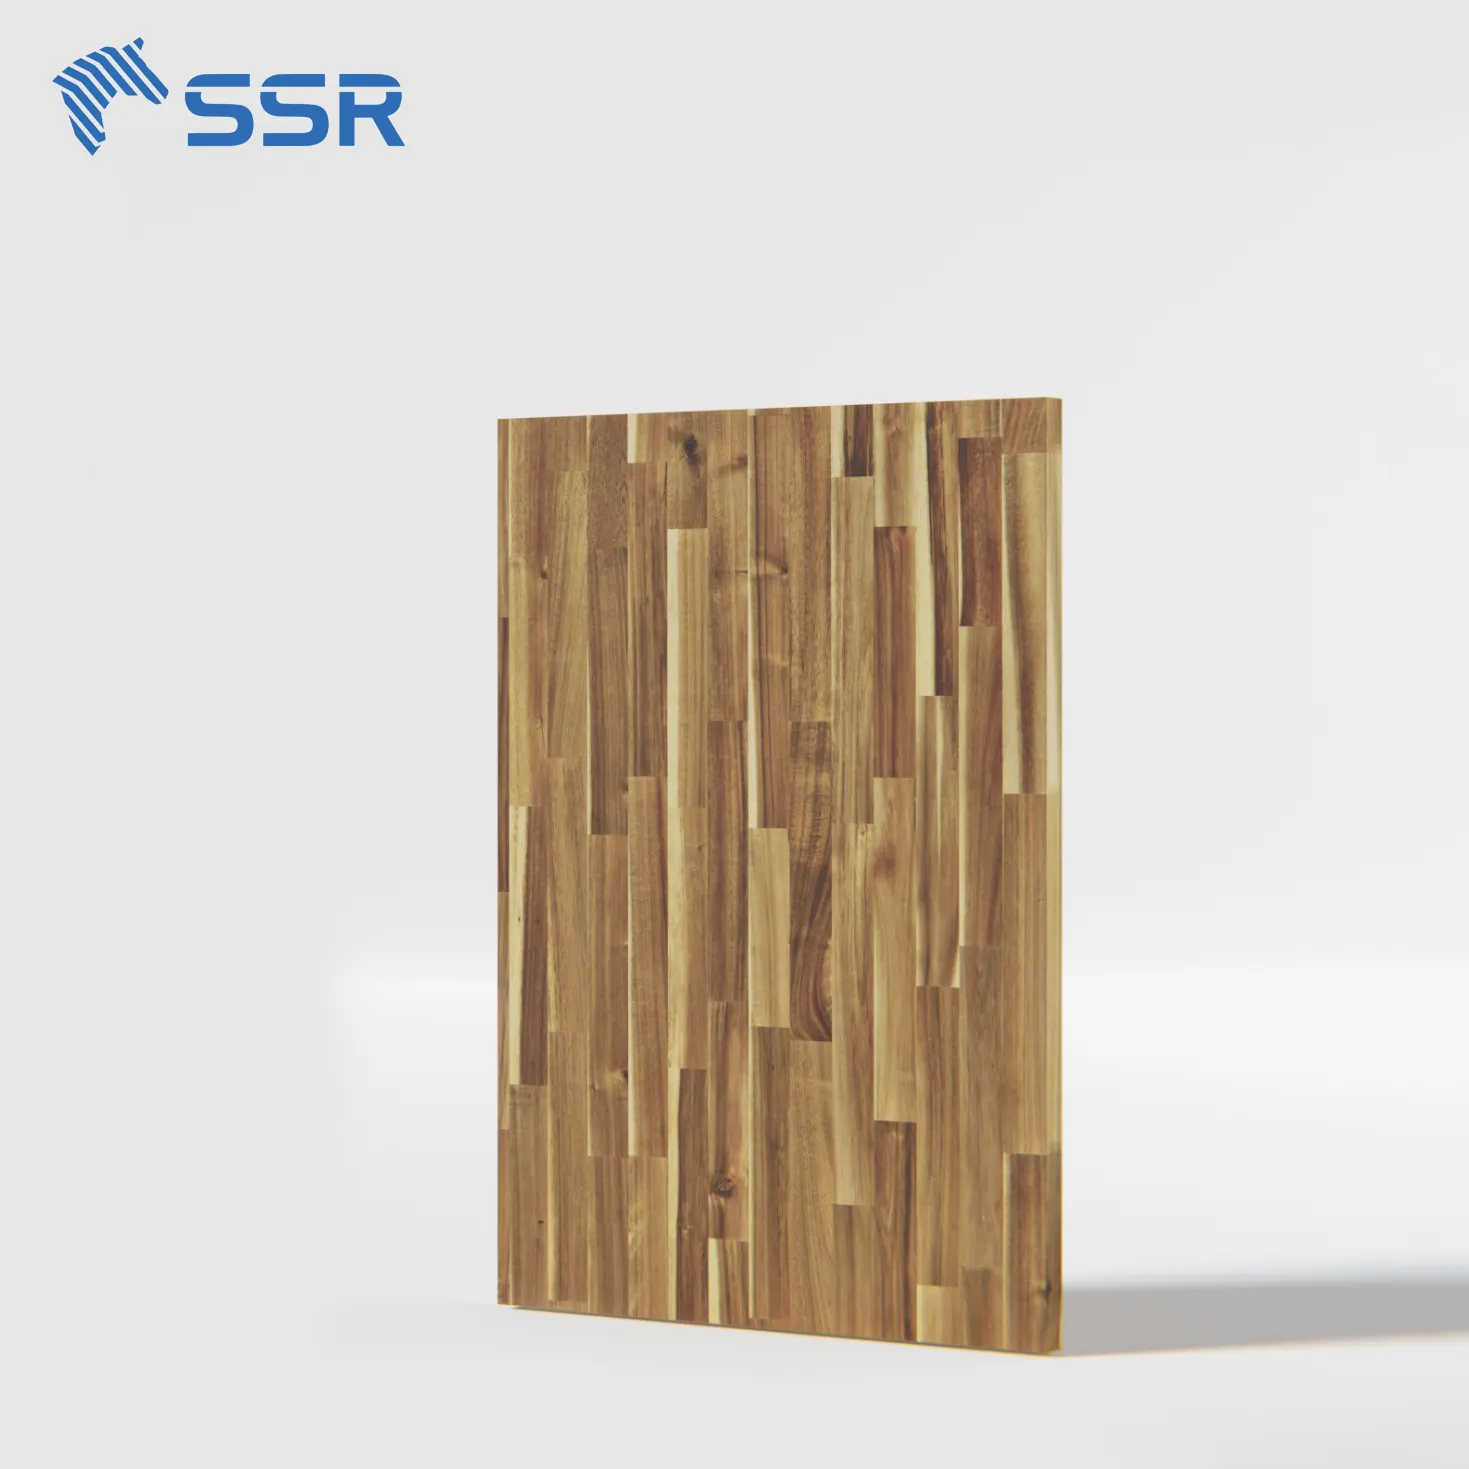 SSR VINA - Acacia Butcher Block Arbeits platte-Hochwertige Tischplatte aus Holz Tischplatte Küchen arbeits platte